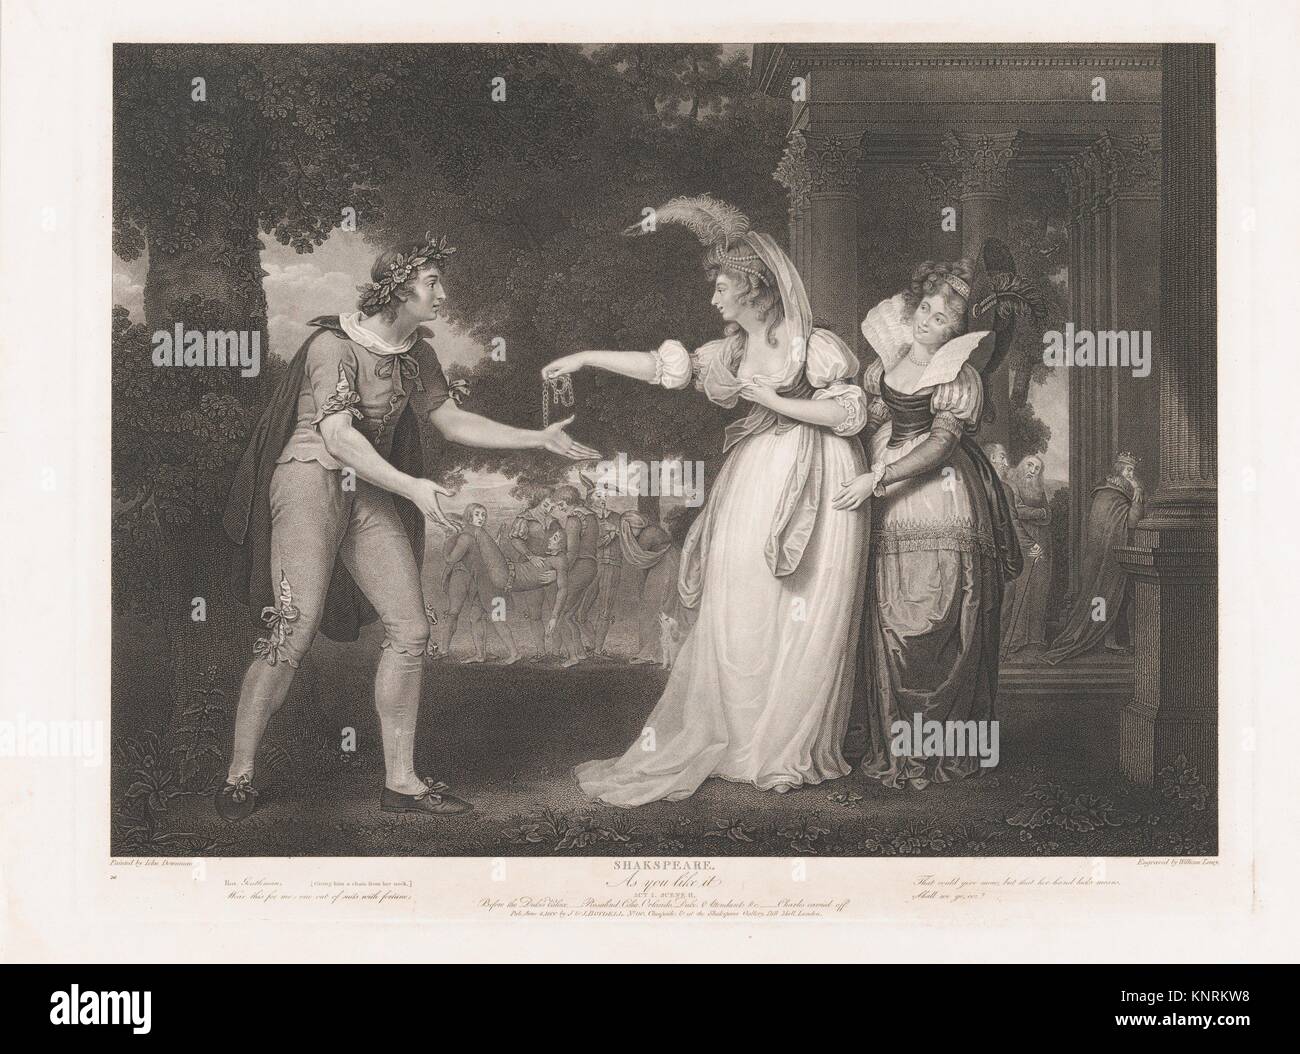 Antes de Duke's Palace-Rosalind, Celia, Orlando, el duque & asistentes (Shakespeare, Como le gusta, Acto I, escena 2). Series/Cartera: Boydell's Foto de stock